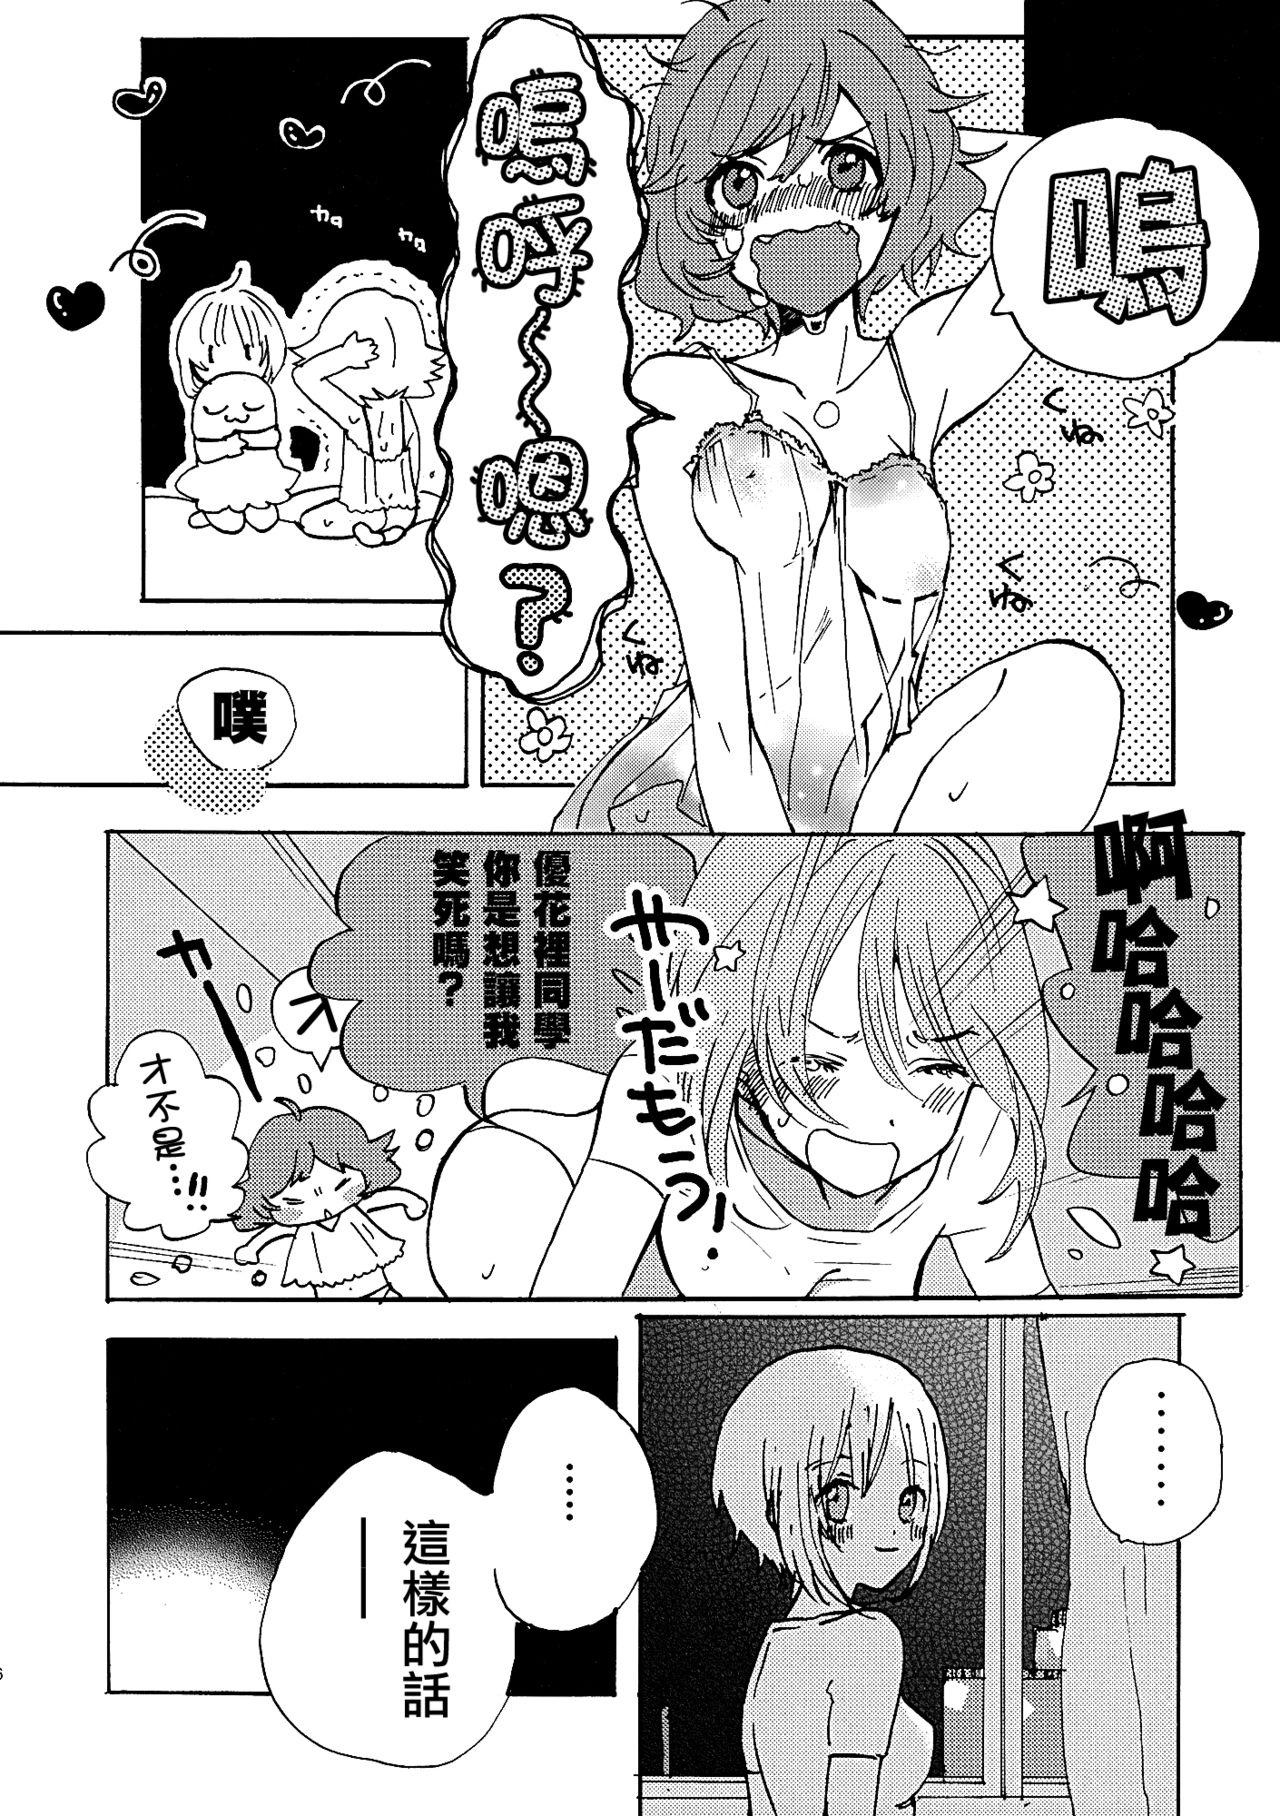 Viet Natsu wa Aka-chan Play to Chimou to, Hanabi o Mite Kiss o Suru no da. - Girls und panzer Nurumassage - Page 5